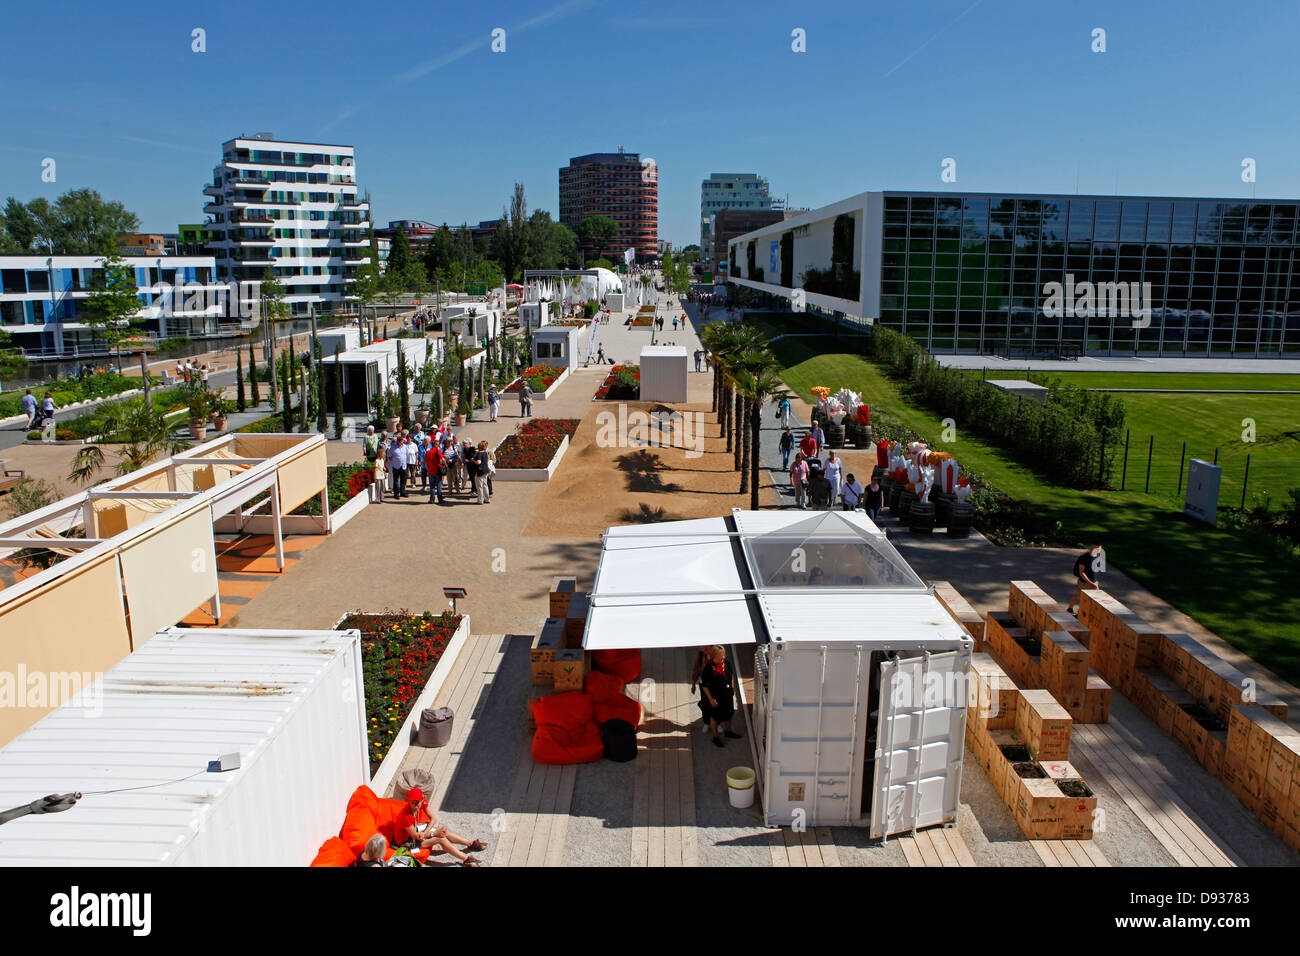 Des expositions et des bâtiments à l'International Garden Show 2013 (IGS) sur l'île de Wilhelmsburg à Hambourg, Allemagne. Banque D'Images